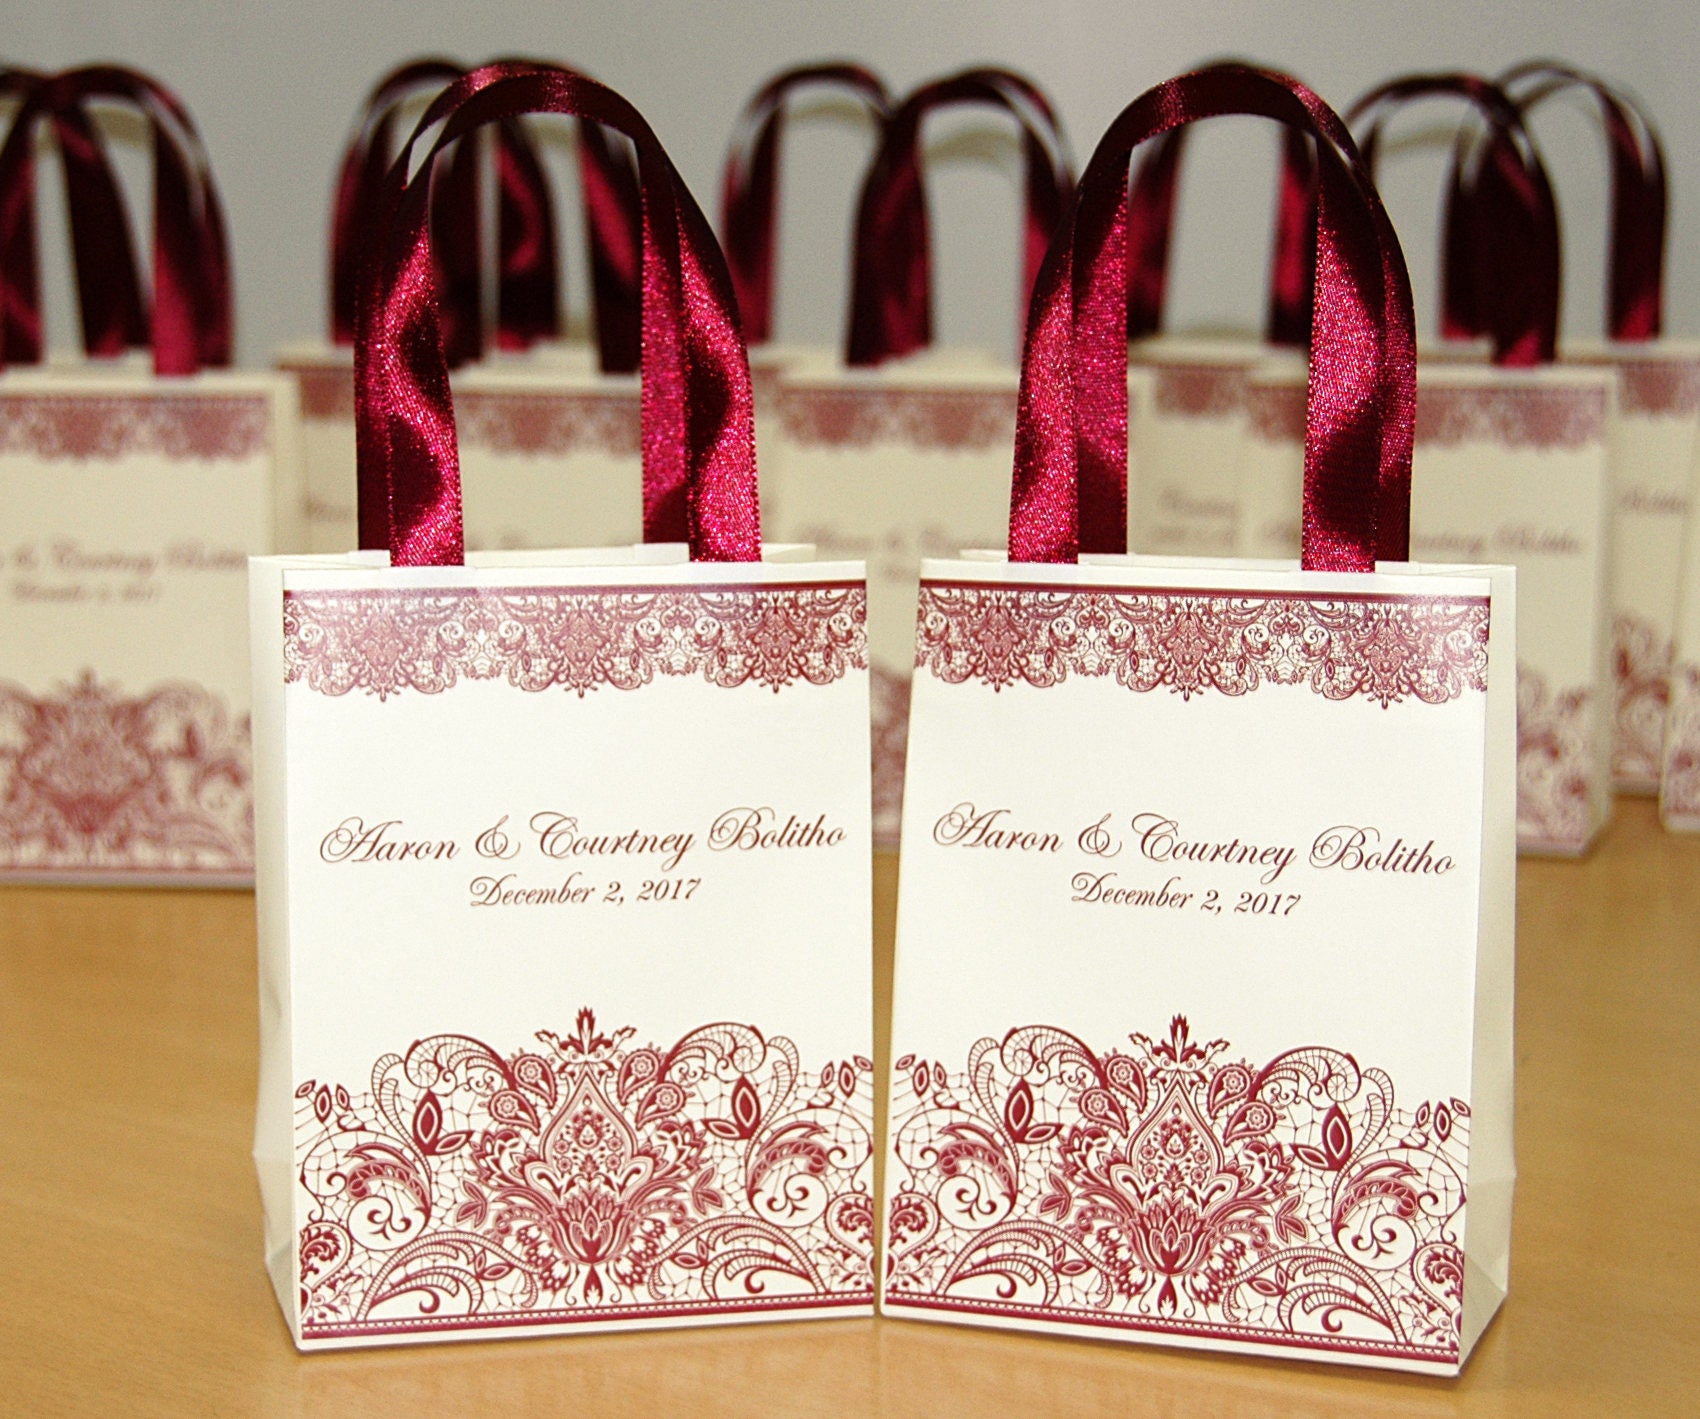 Bolsas de papel para regalos: kit de 20 bolsitas para regalos de papel de  colores con asas y 25 bonitas pegatinas – cumpleaños infantiles y regalos